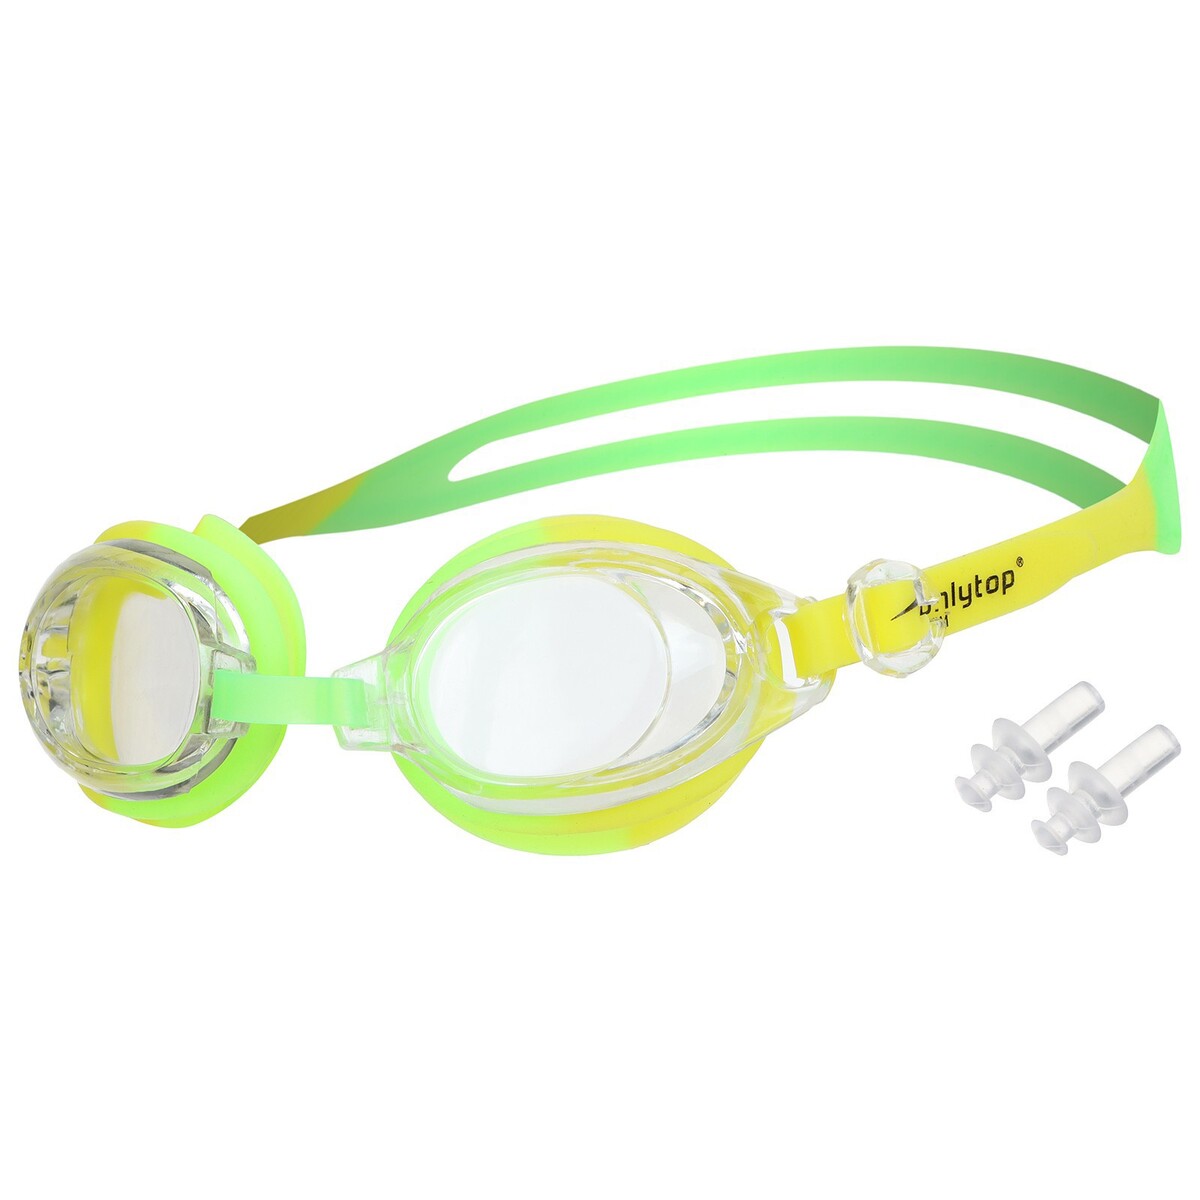 Очки для плавания детские onlytop, беруши, цвет салатовый/желтый очки для плавания speedo futura classic 8 10898b572a